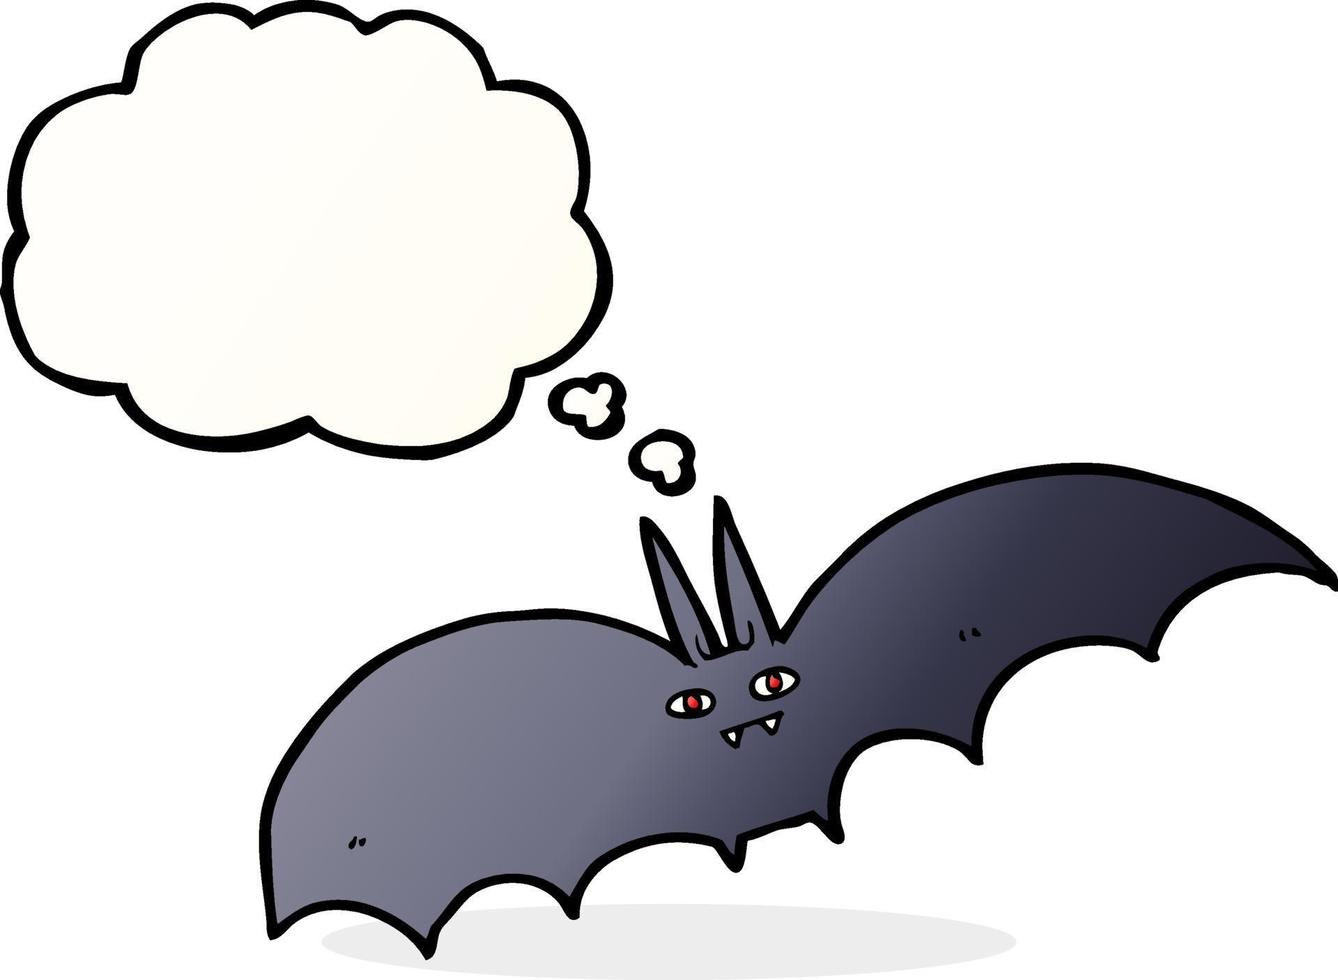 desenho de coleção de vetor de morcego-vampiro 484996 Vetor no Vecteezy